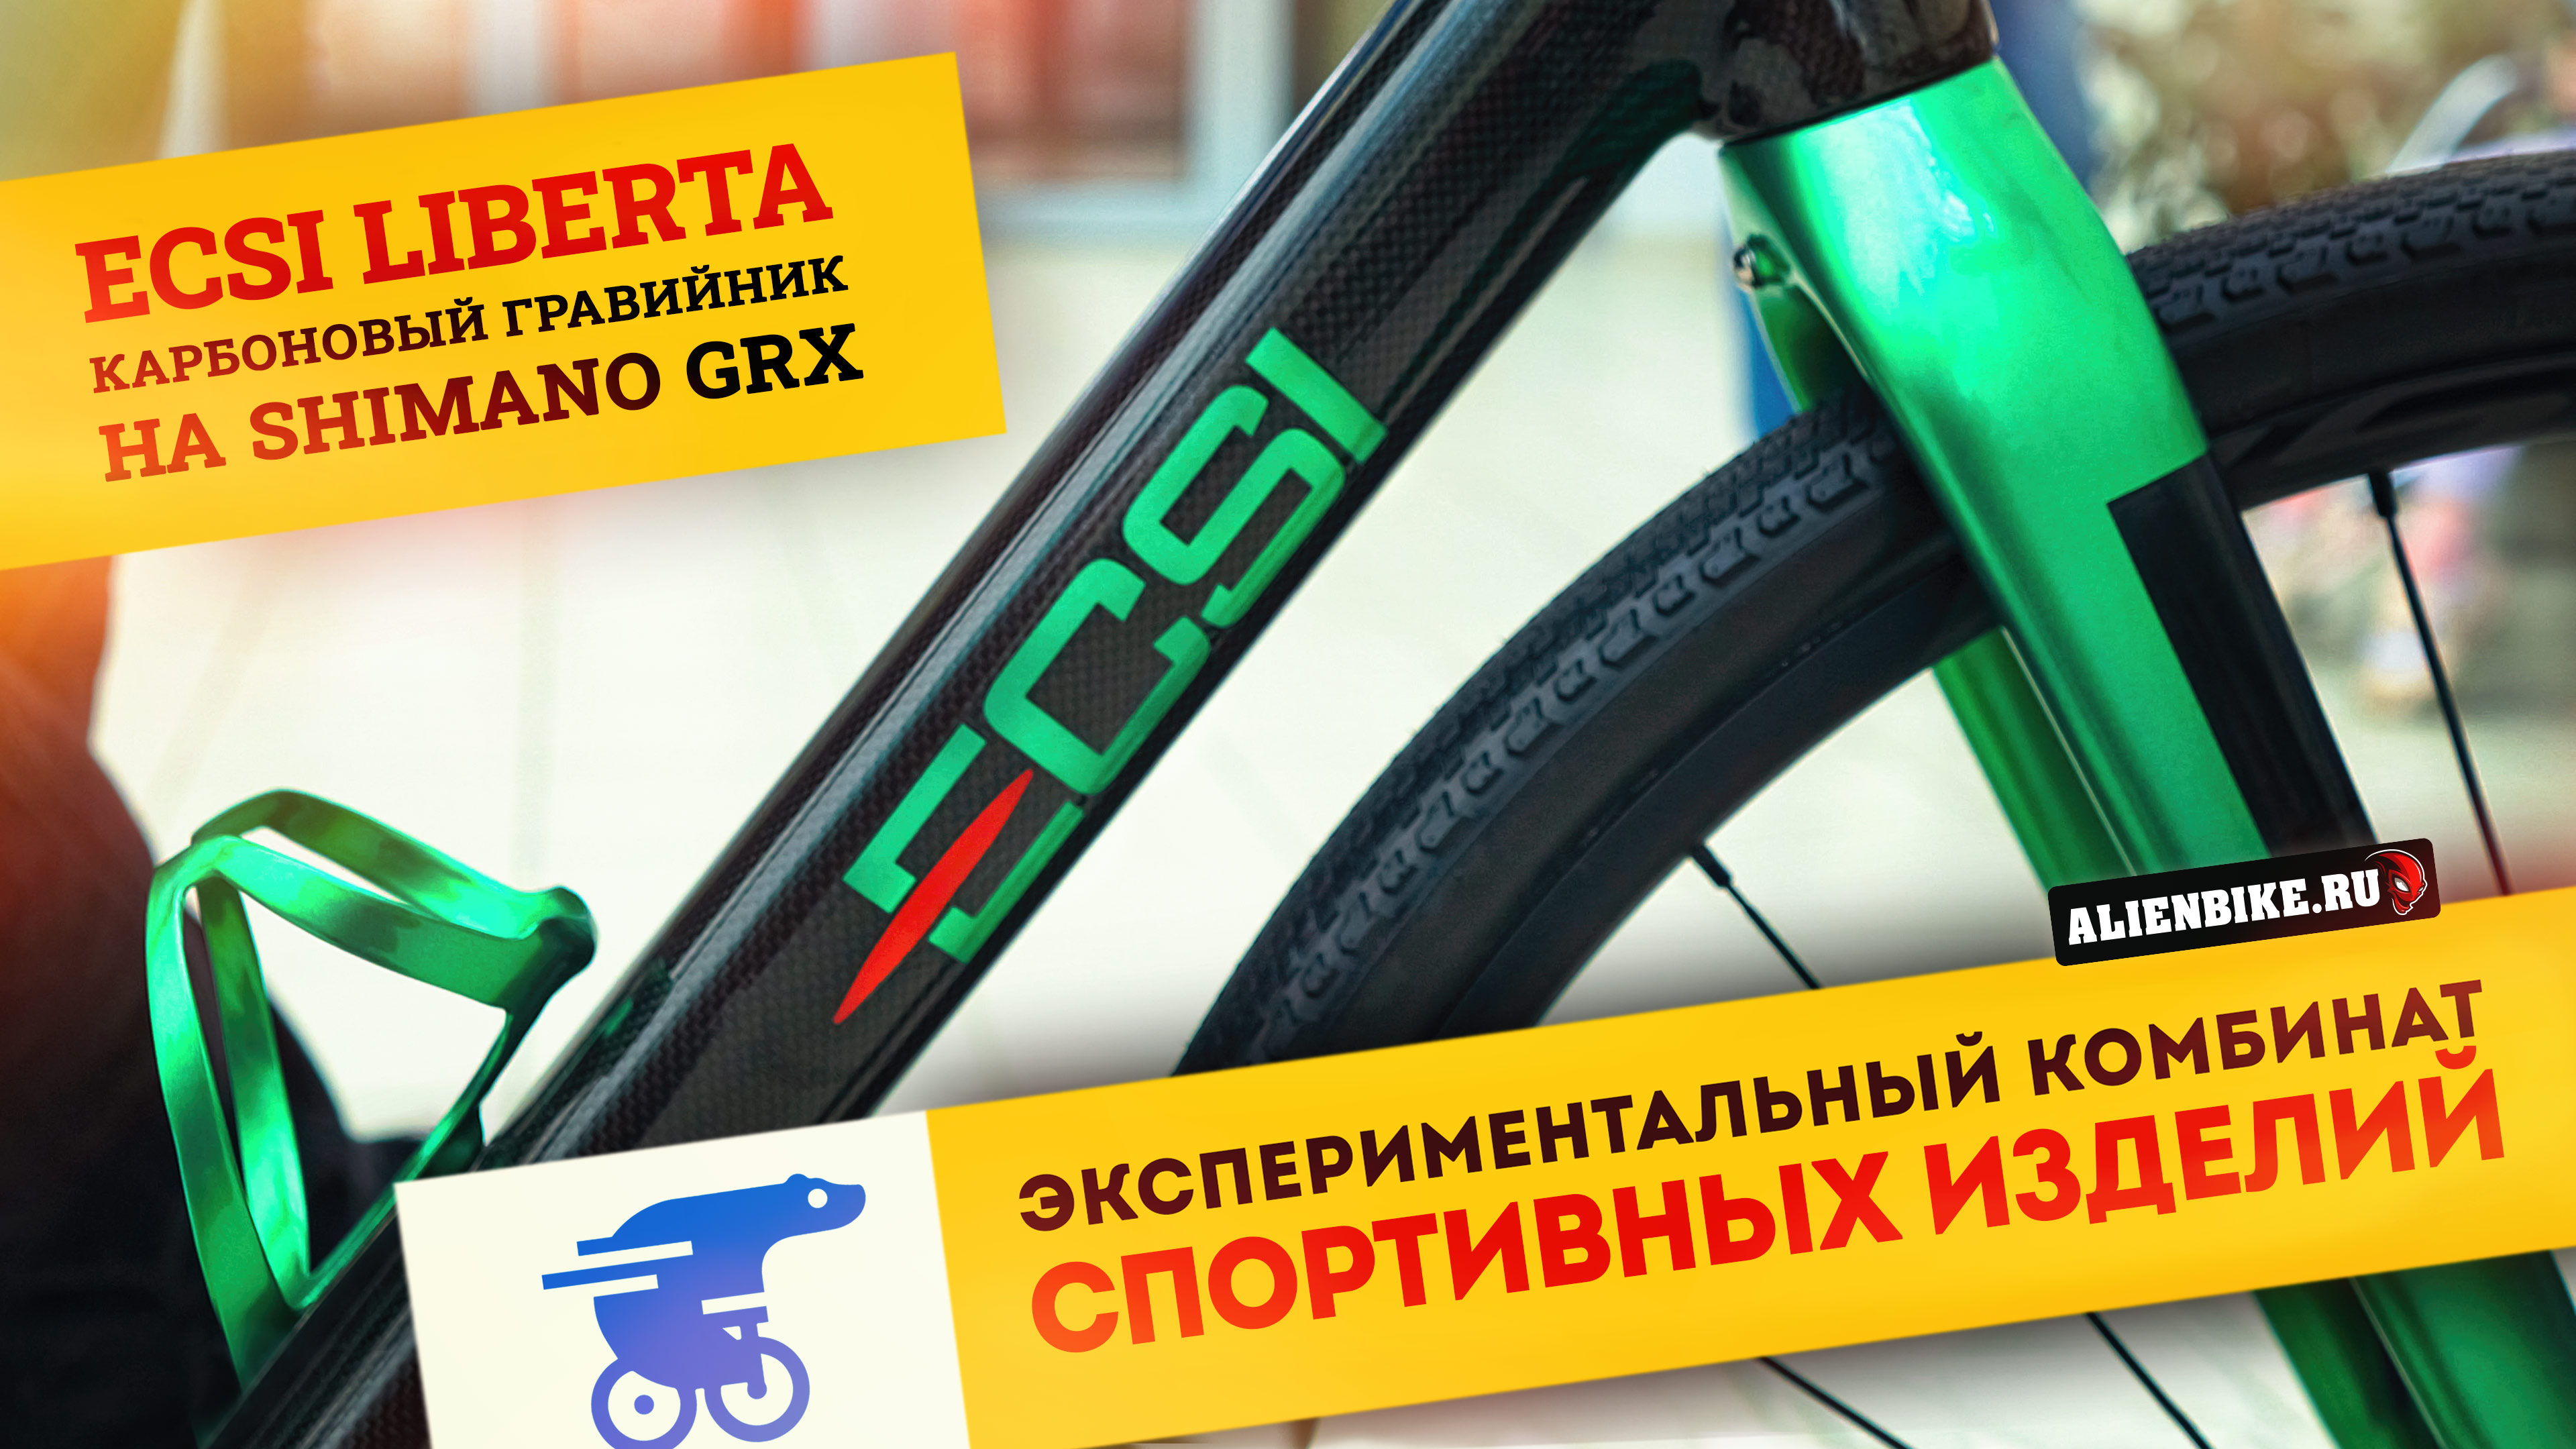 Карбоновый гравийник ECSI Liberta | Легкий велосипед на осях и трансмиссией Shimano GRX 820